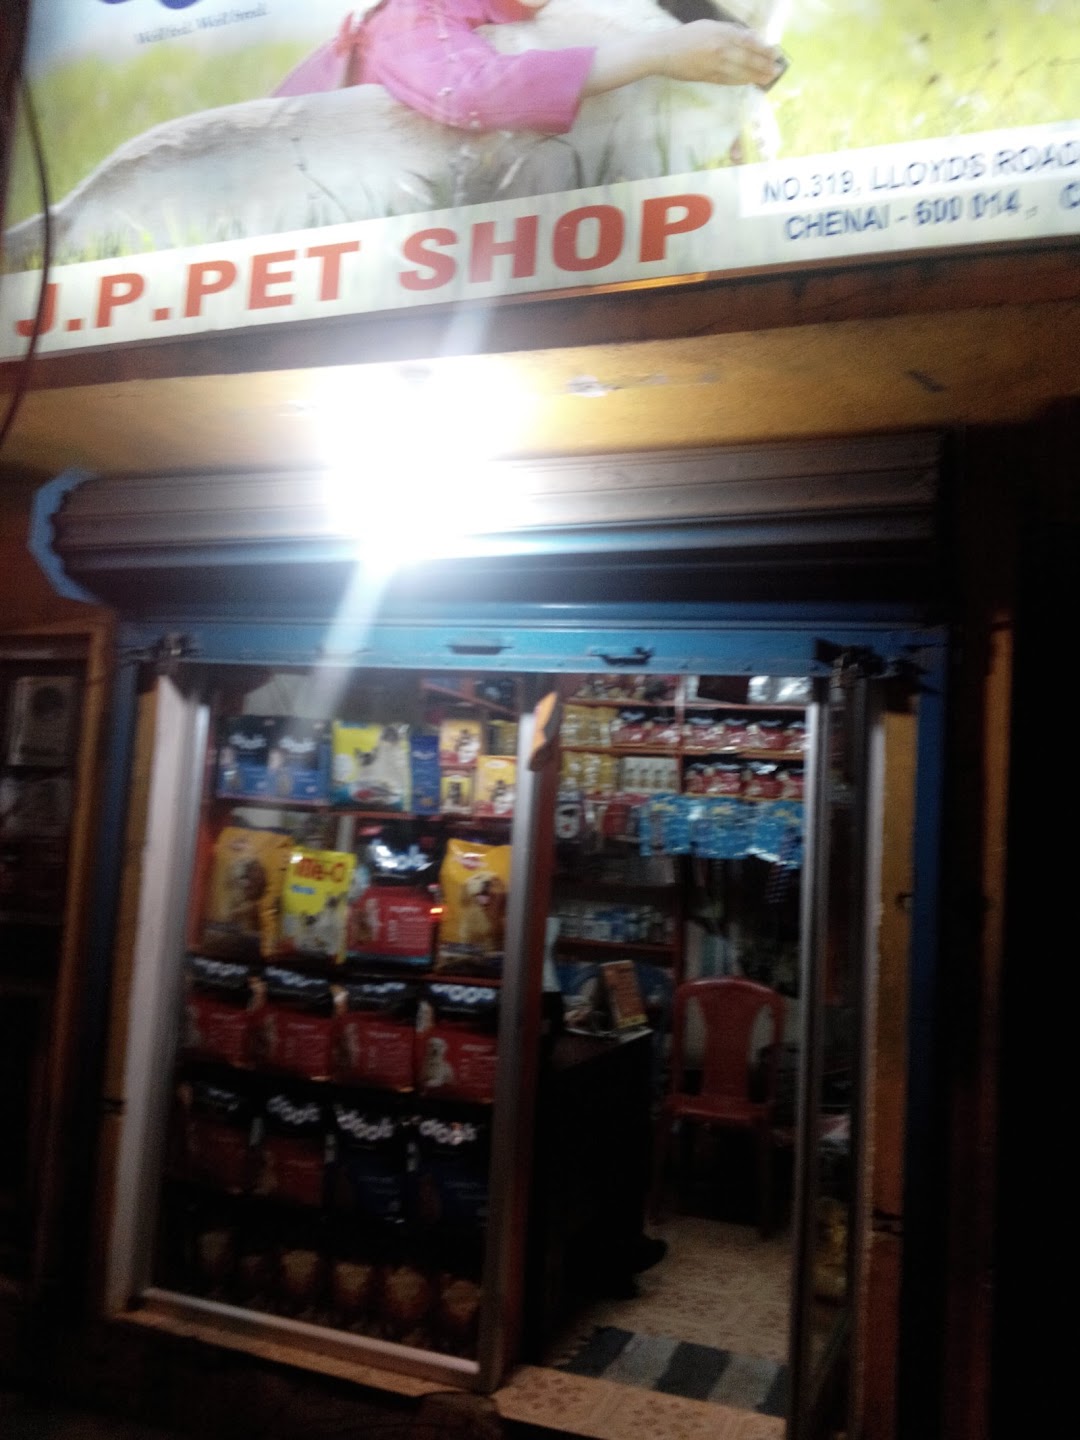 Jp pet shop